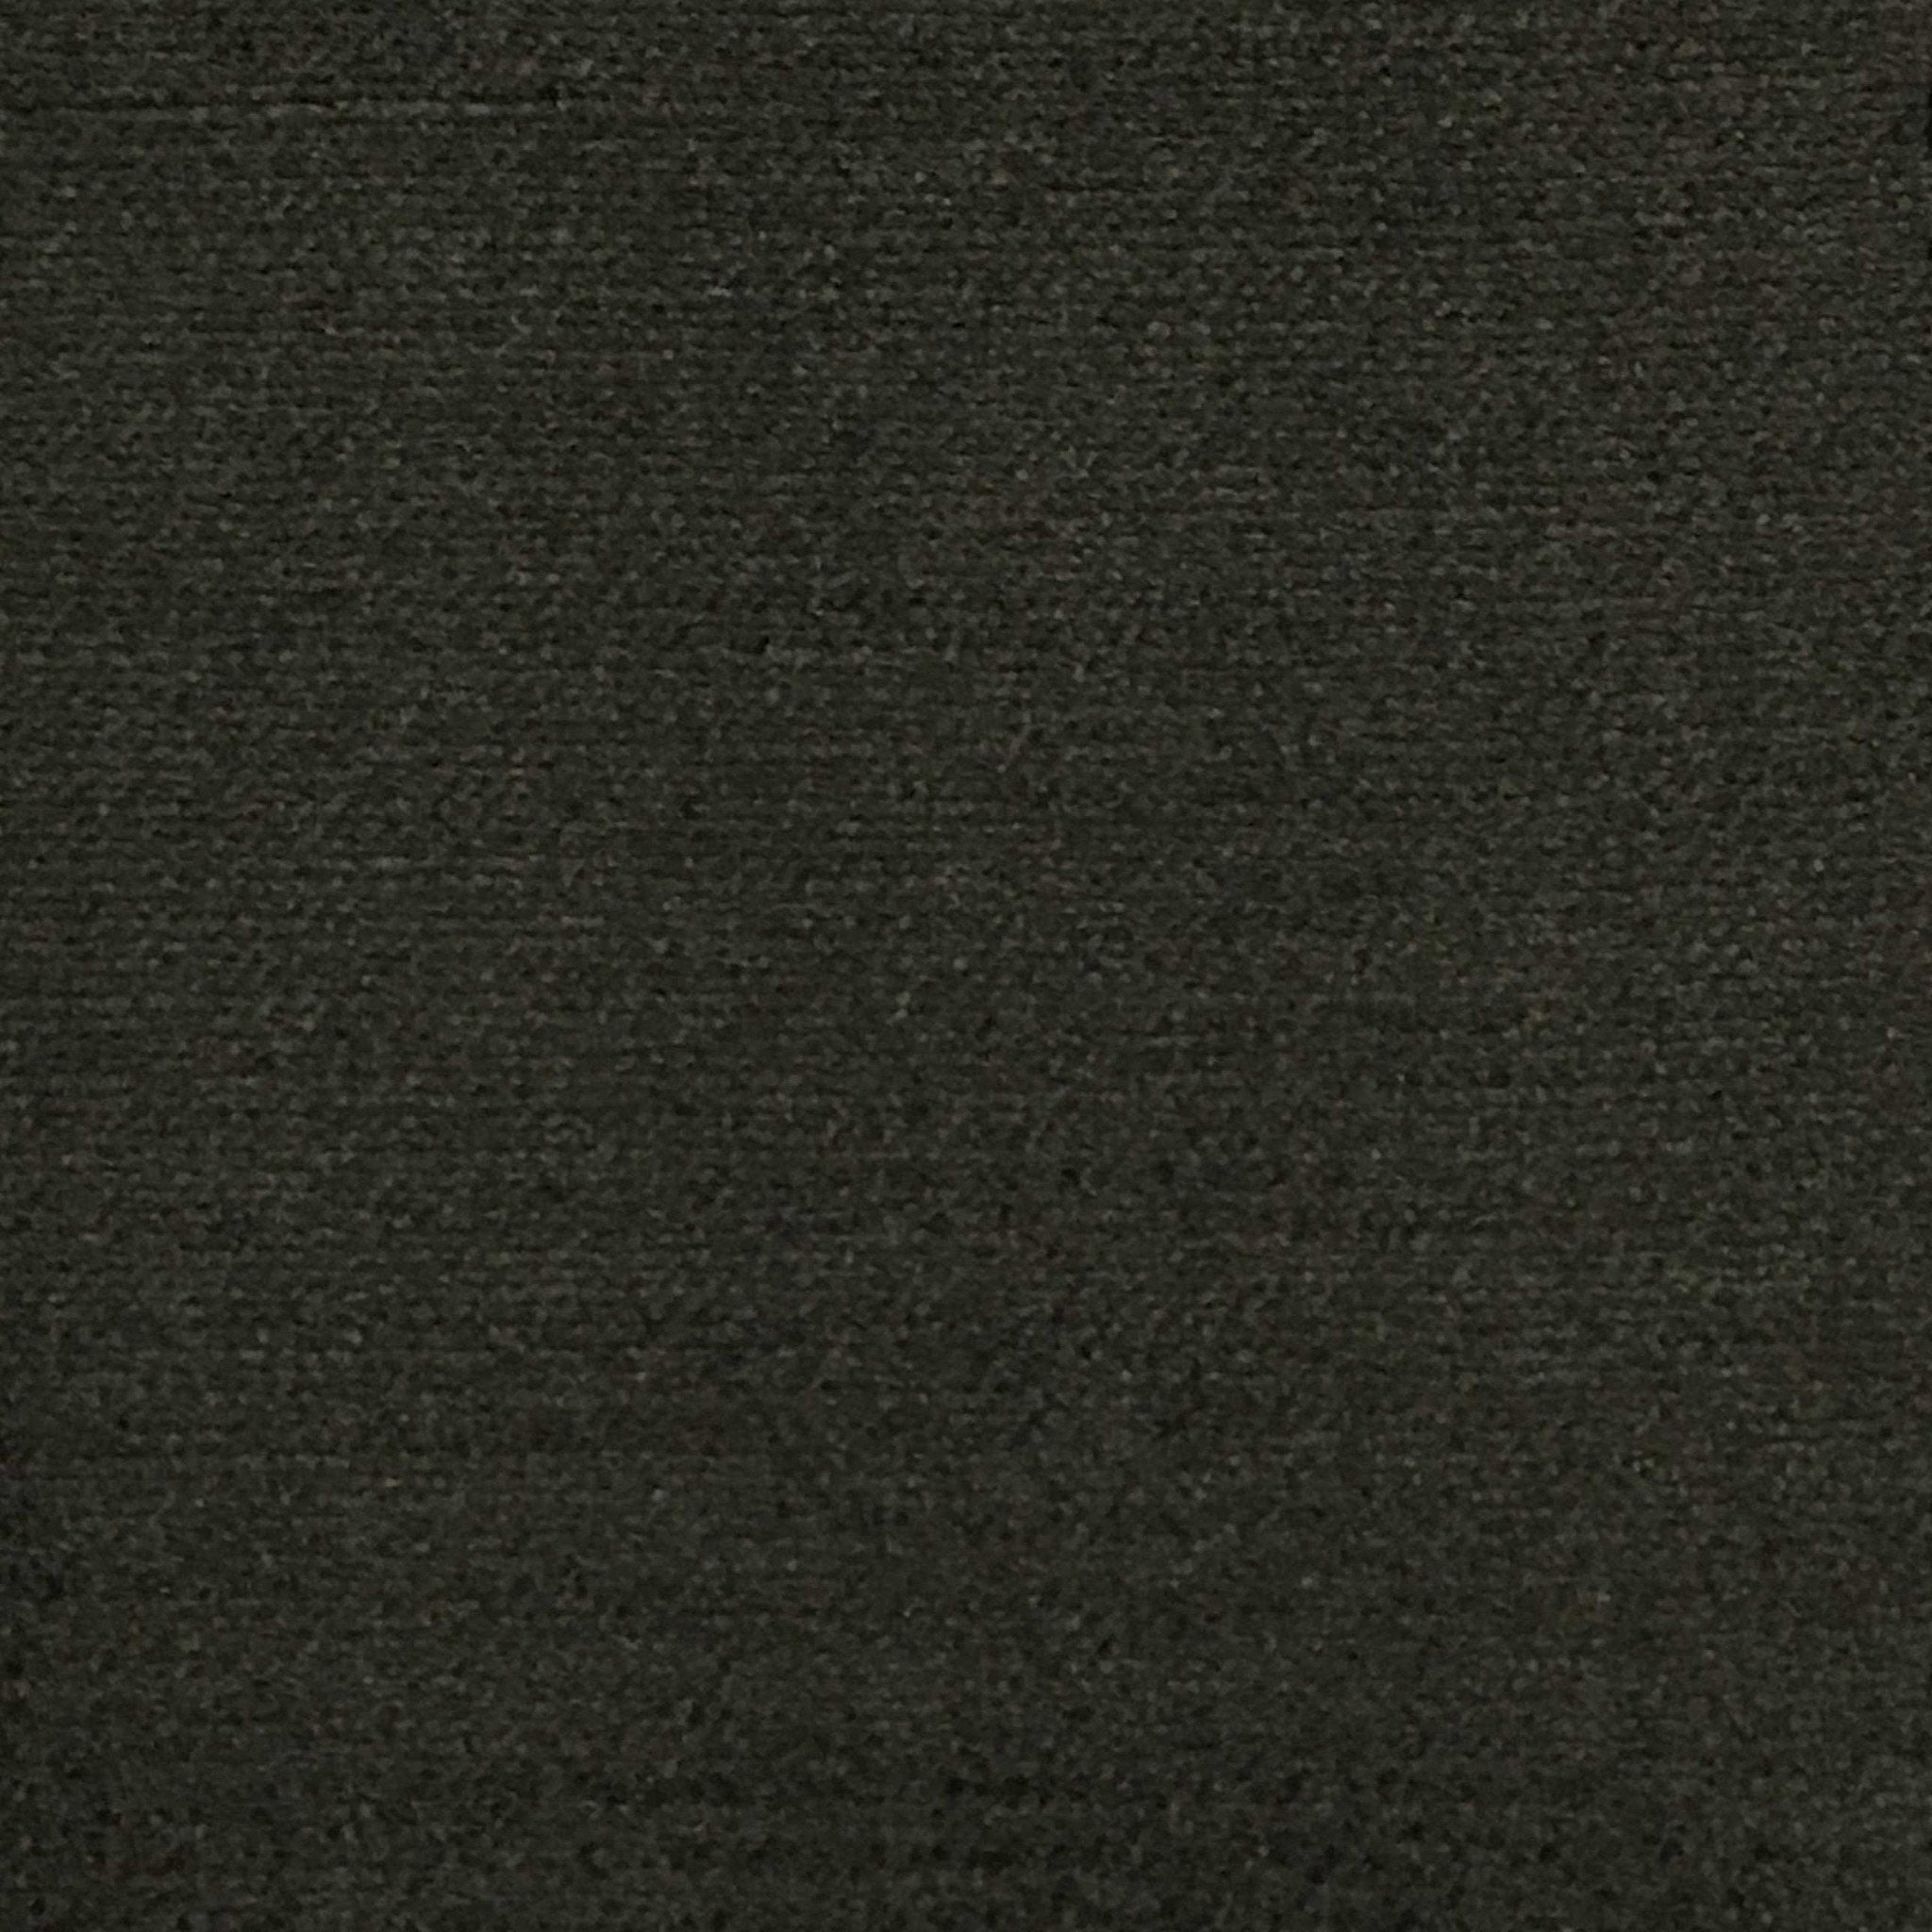 Zermatt Velvet Pearl Upholstery Dv Kap Fabric by the yard – Affordable Home  Fabrics